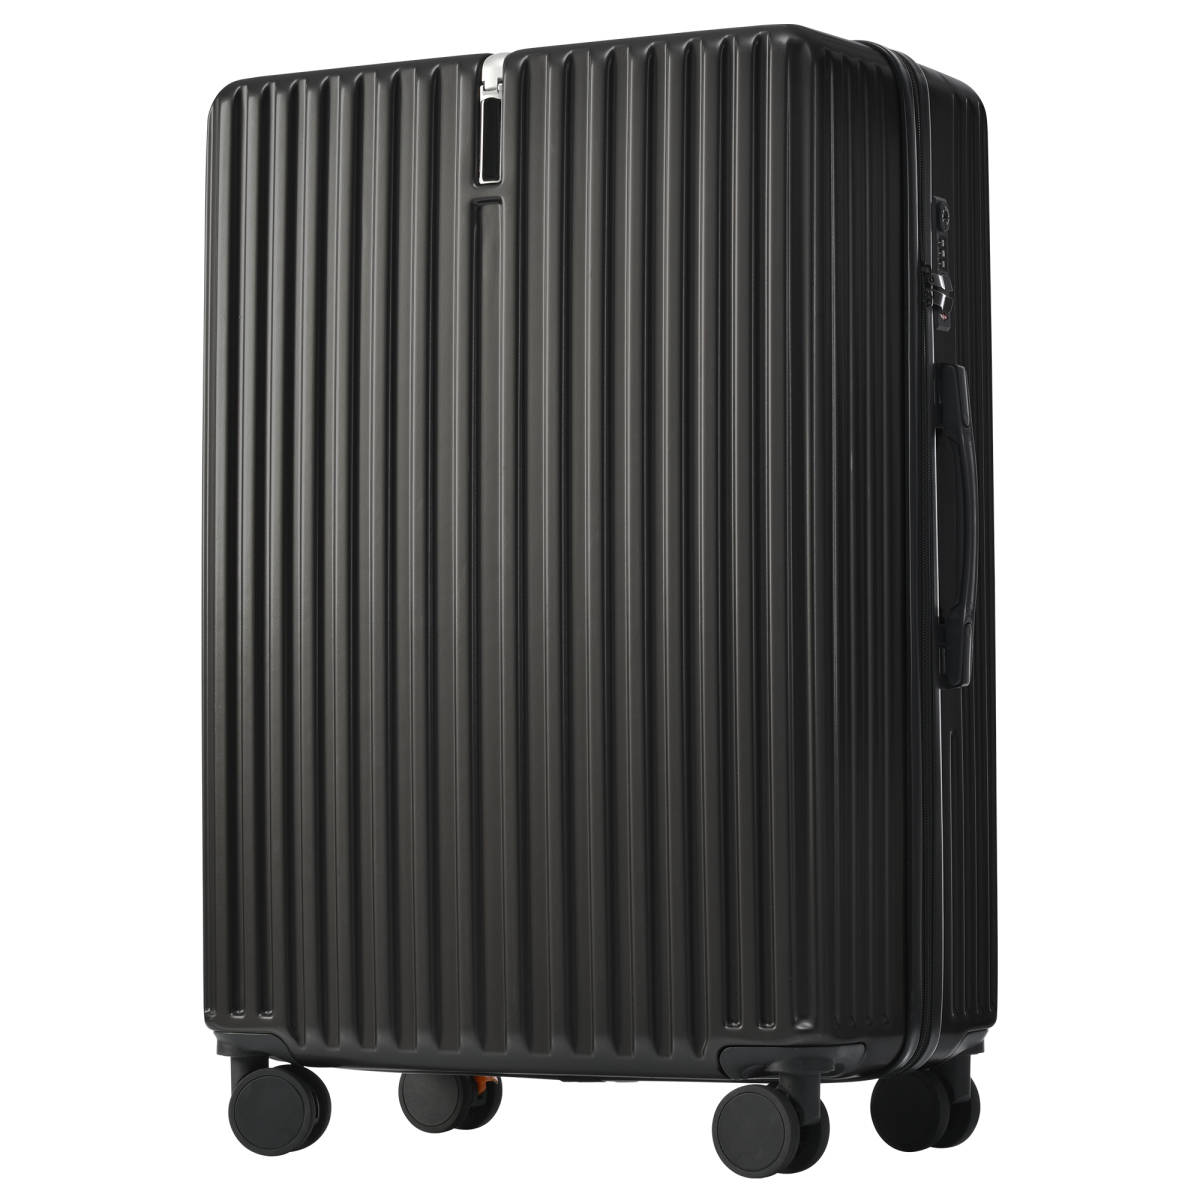 スーツケース Lサイズ 軽量 TSAロック搭載 360度回転 ファスナー式 国際的 おしゃれ 人気色 (L, ブラック)_画像1